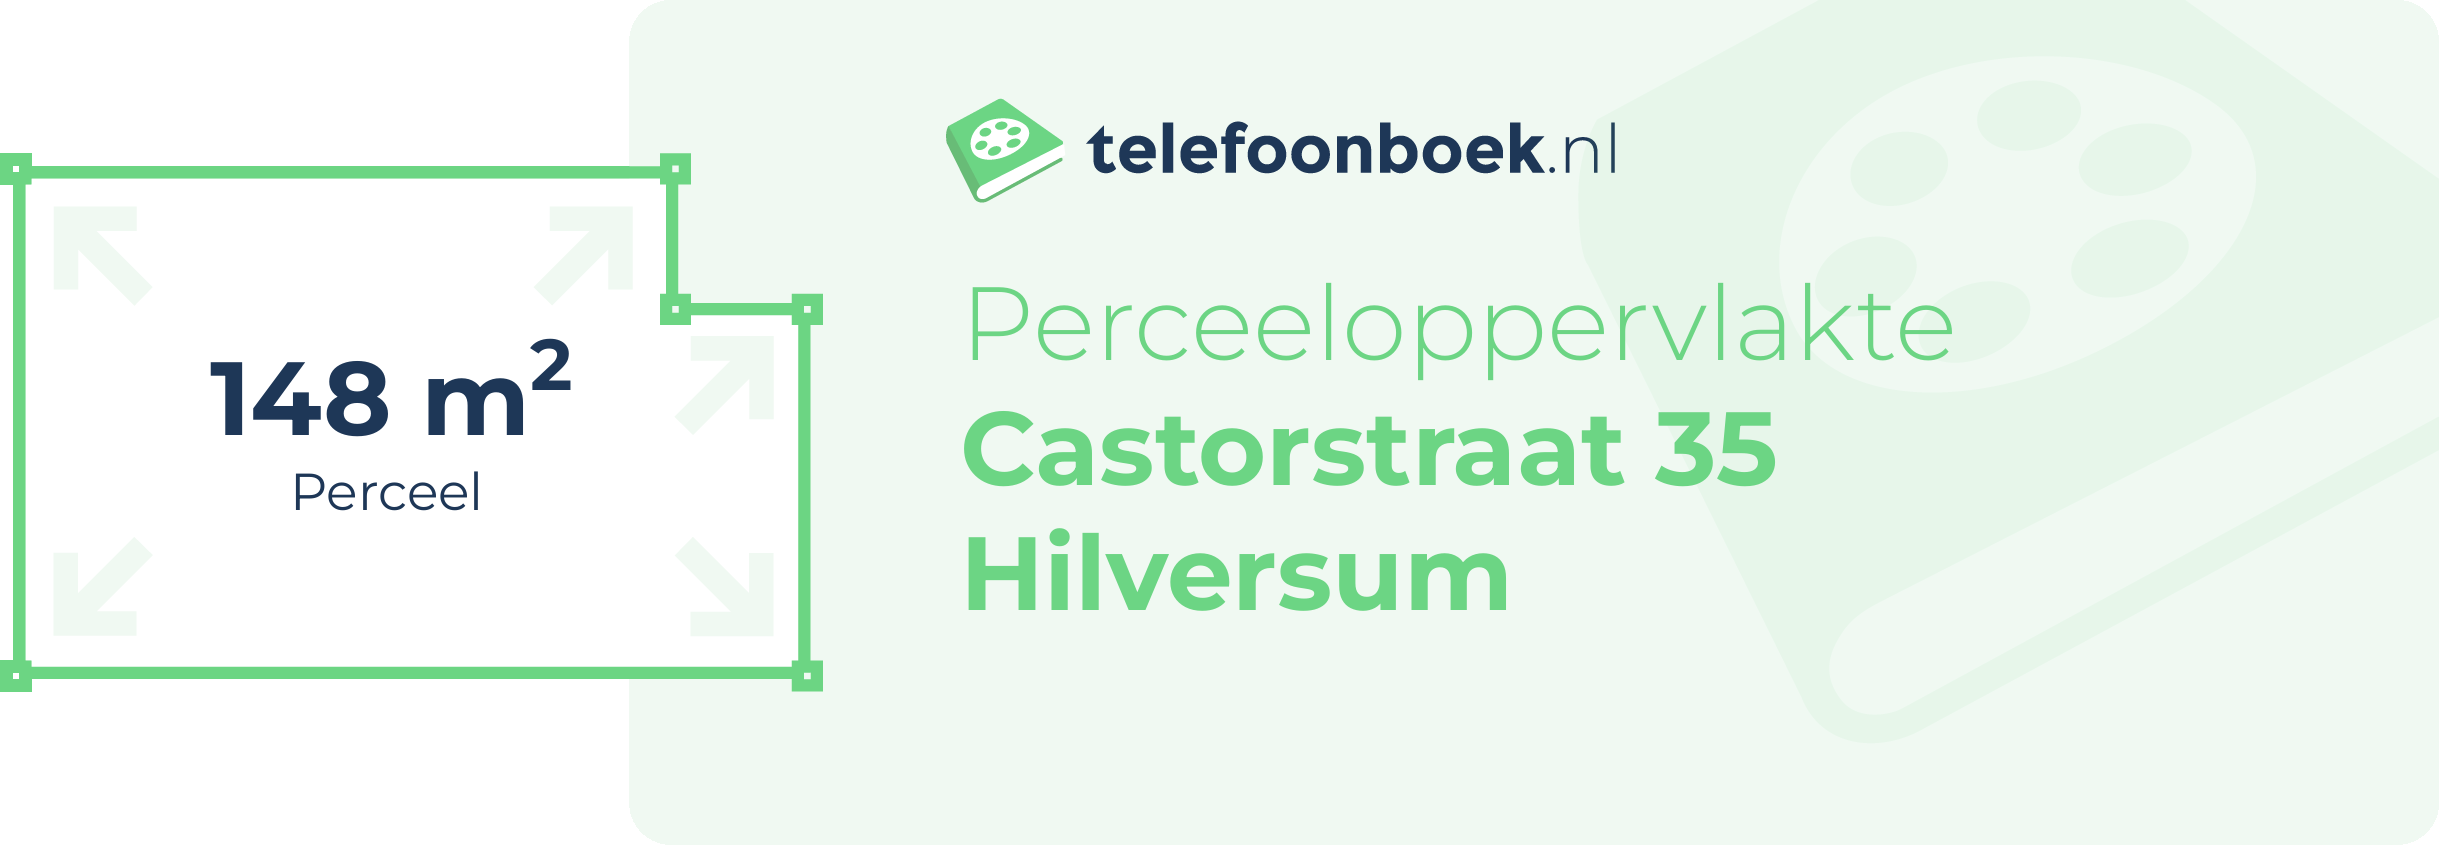 Perceeloppervlakte Castorstraat 35 Hilversum